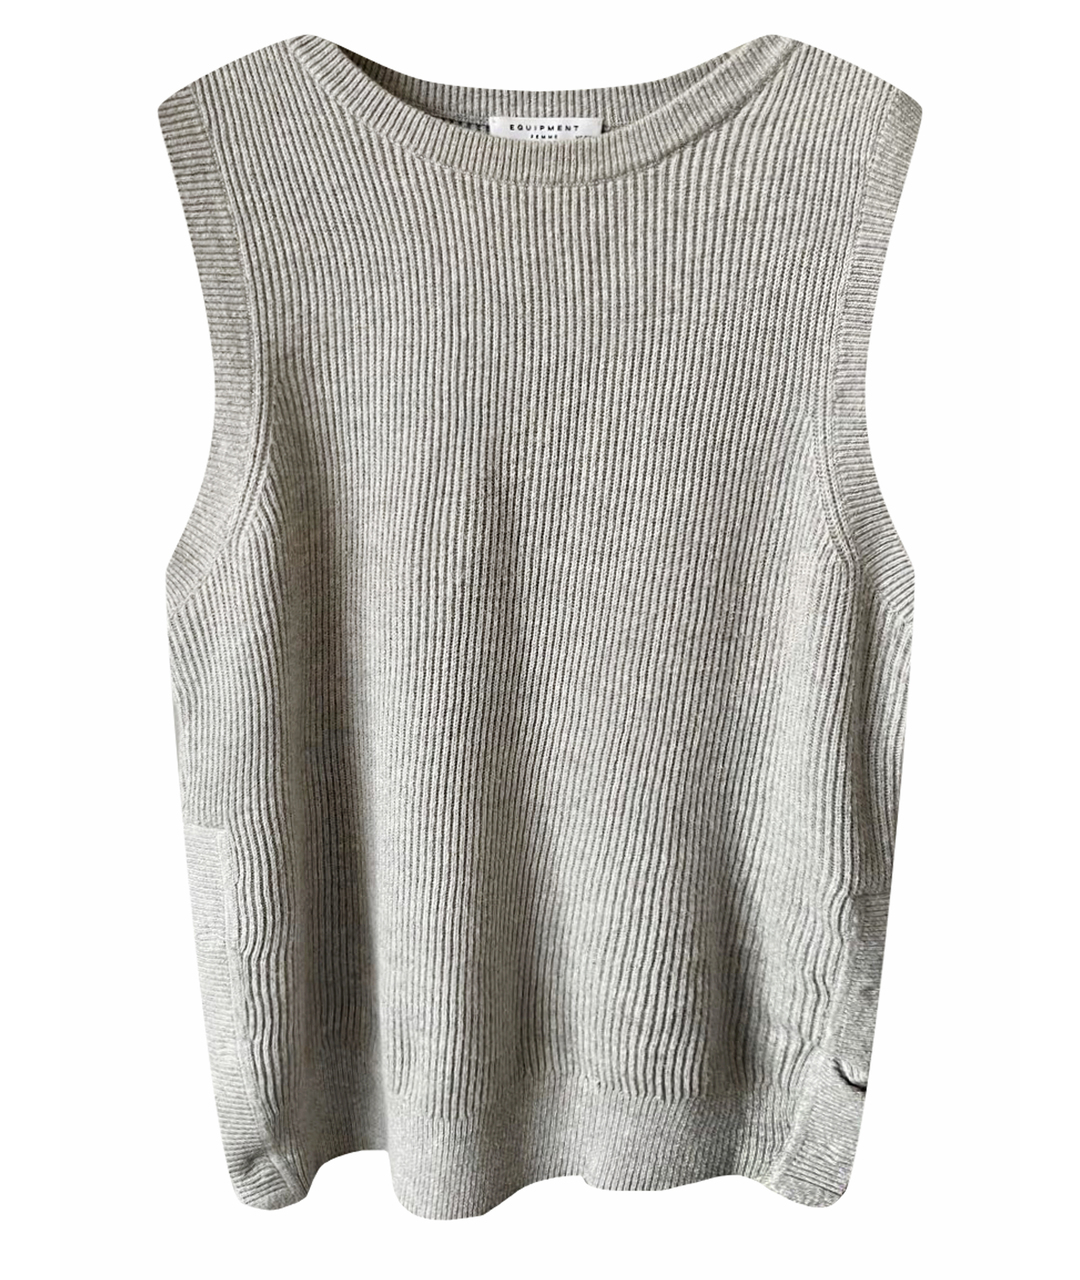 EQUIPMENT Серый хлопковый джемпер / свитер, фото 1